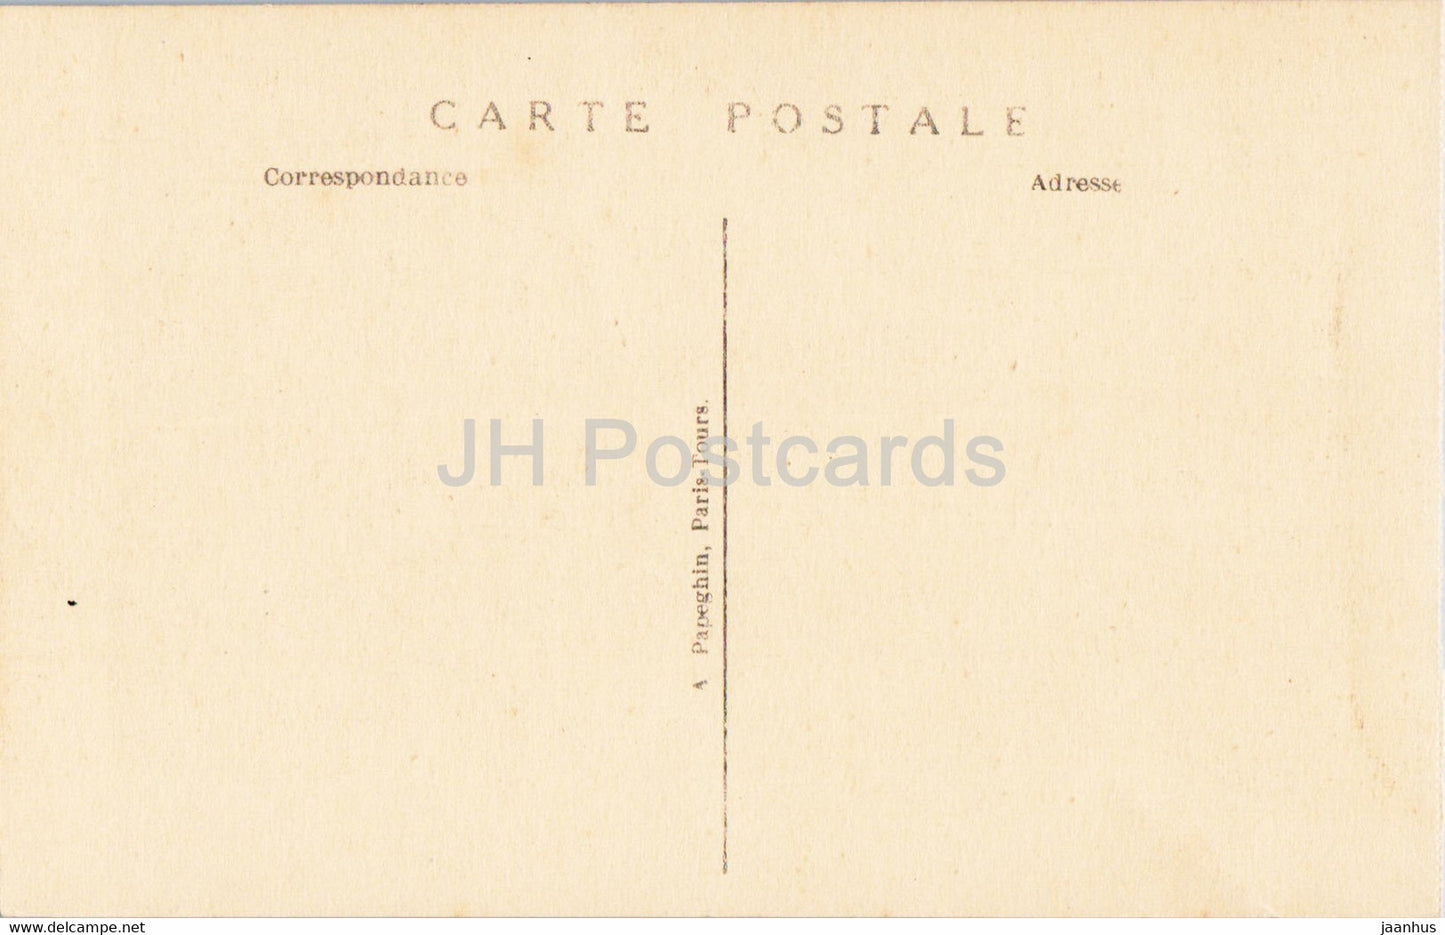 Versailles - La Voiture du Sacre de Charles X - 144 - calèche - carte postale ancienne - France - inutilisée